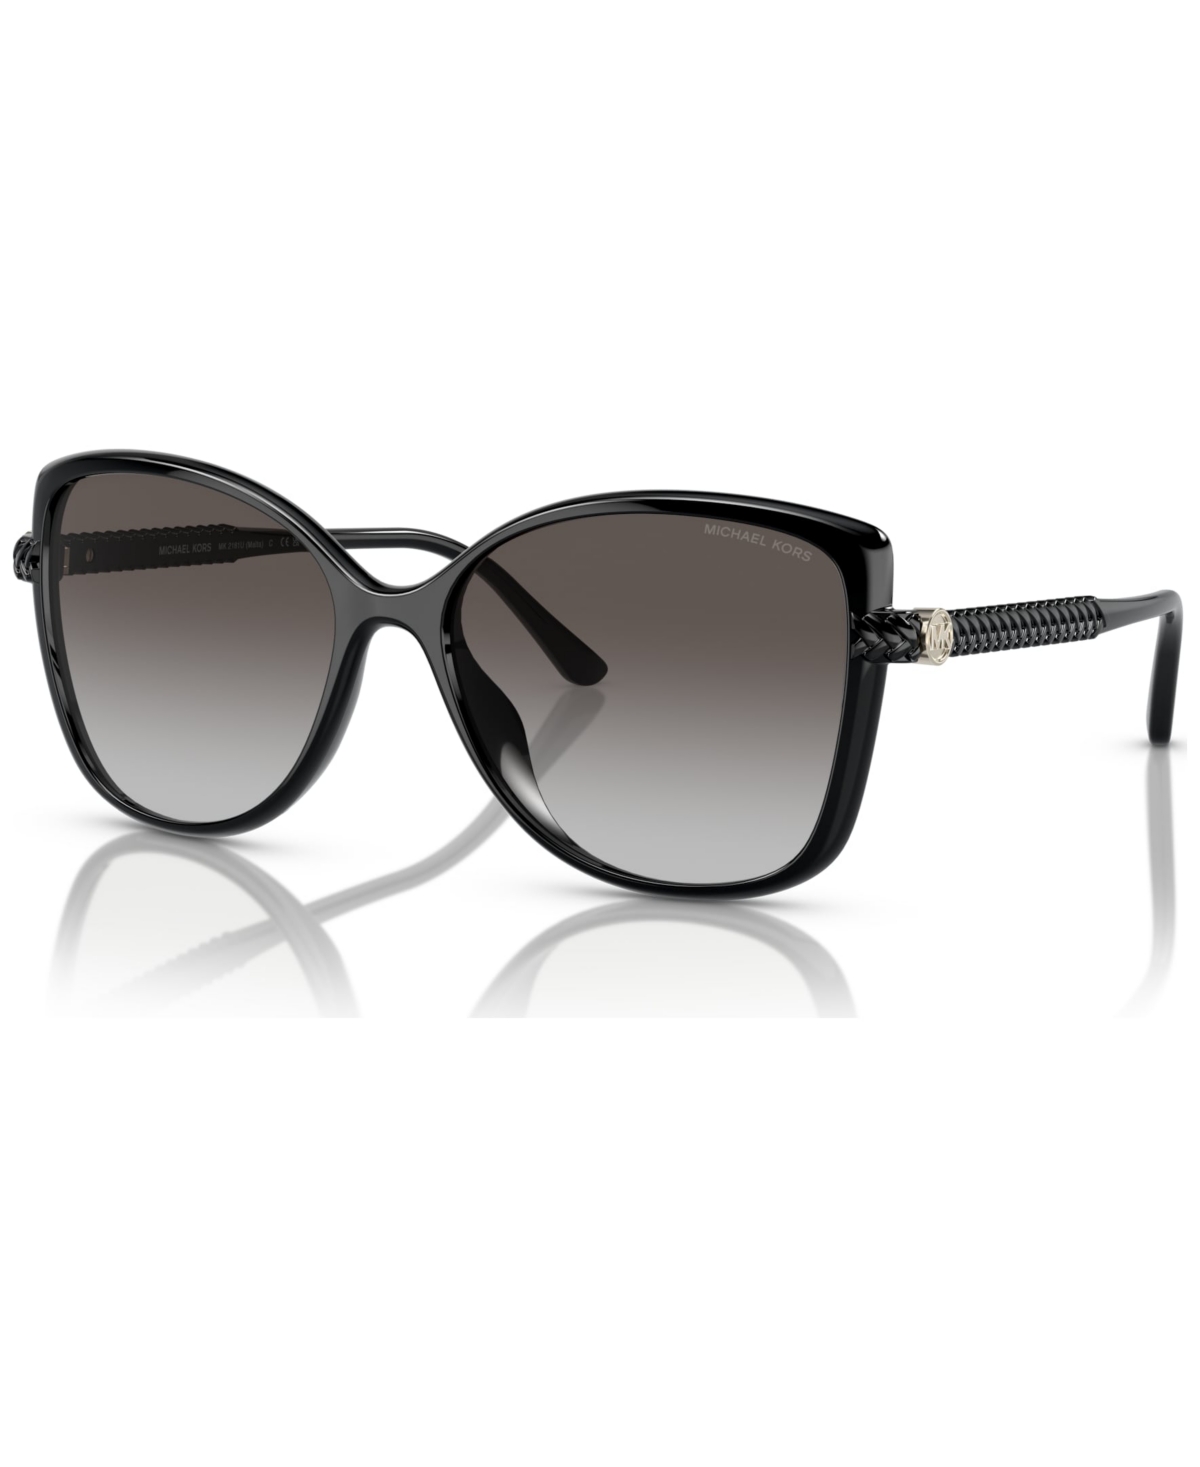 Michael Kors Women's Malta Sunglasses, Mk2181 In Black